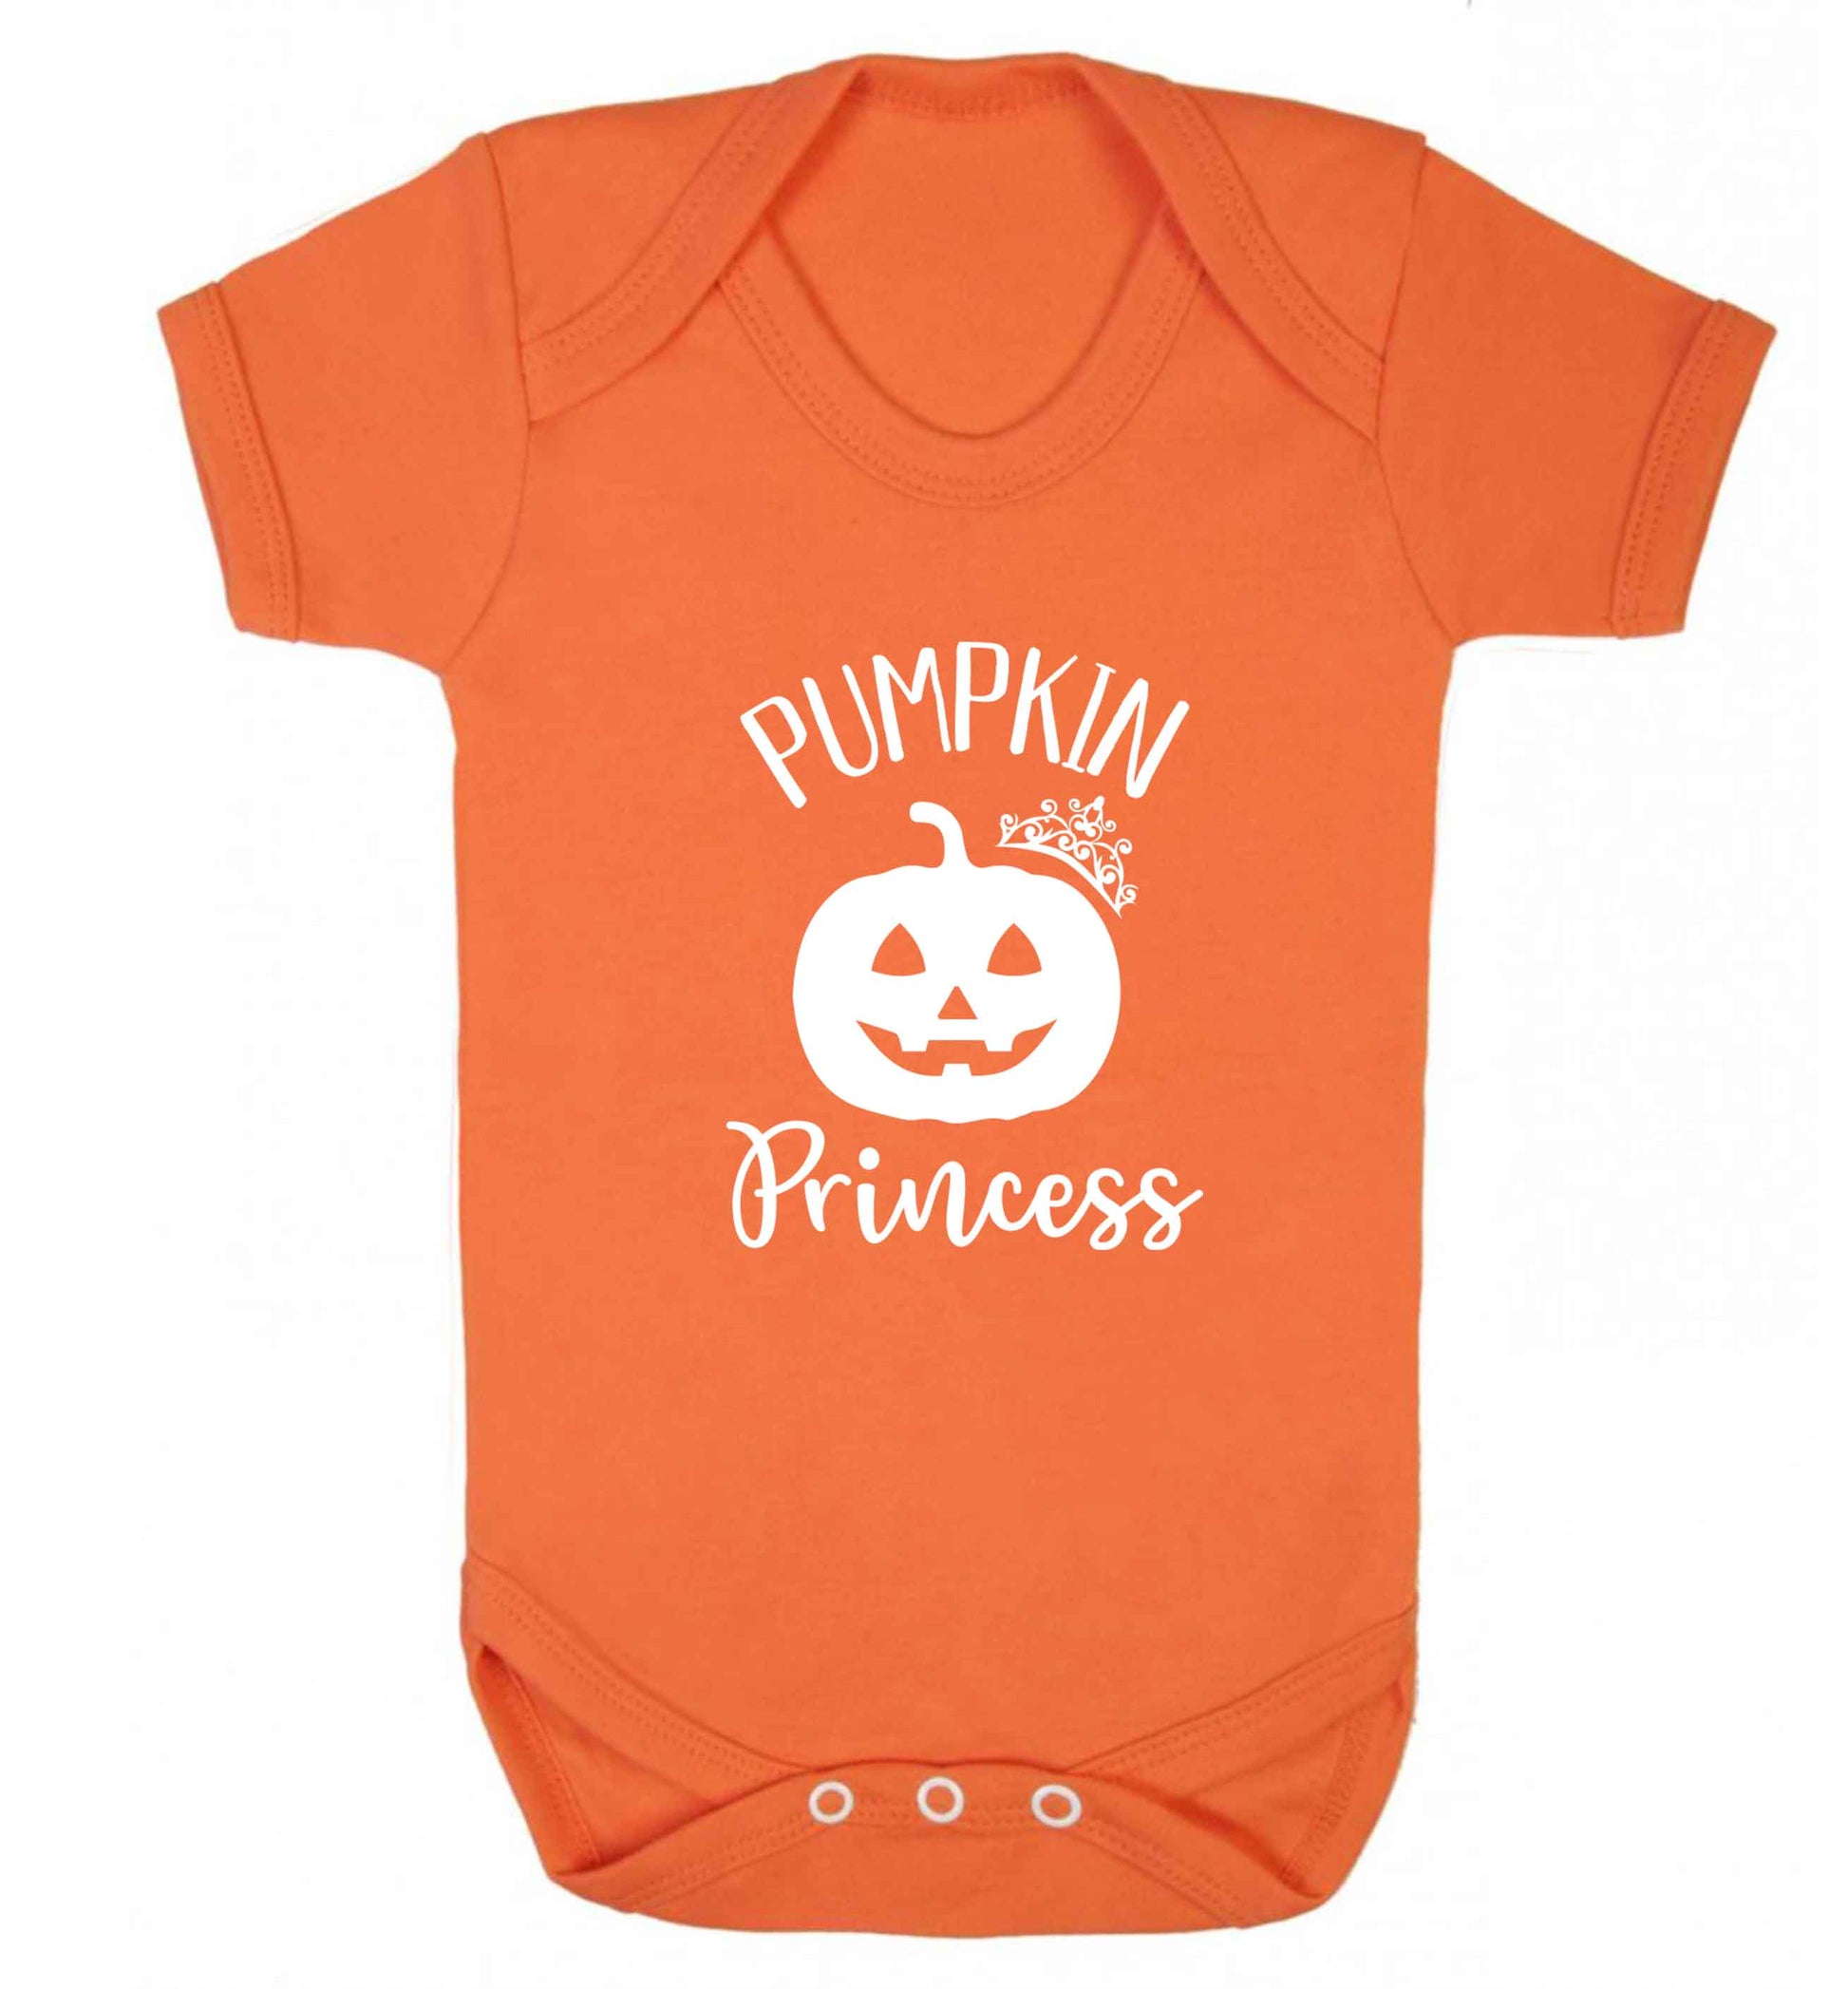 Happiness Pumpkin Spice baby vest orange 18-24 months